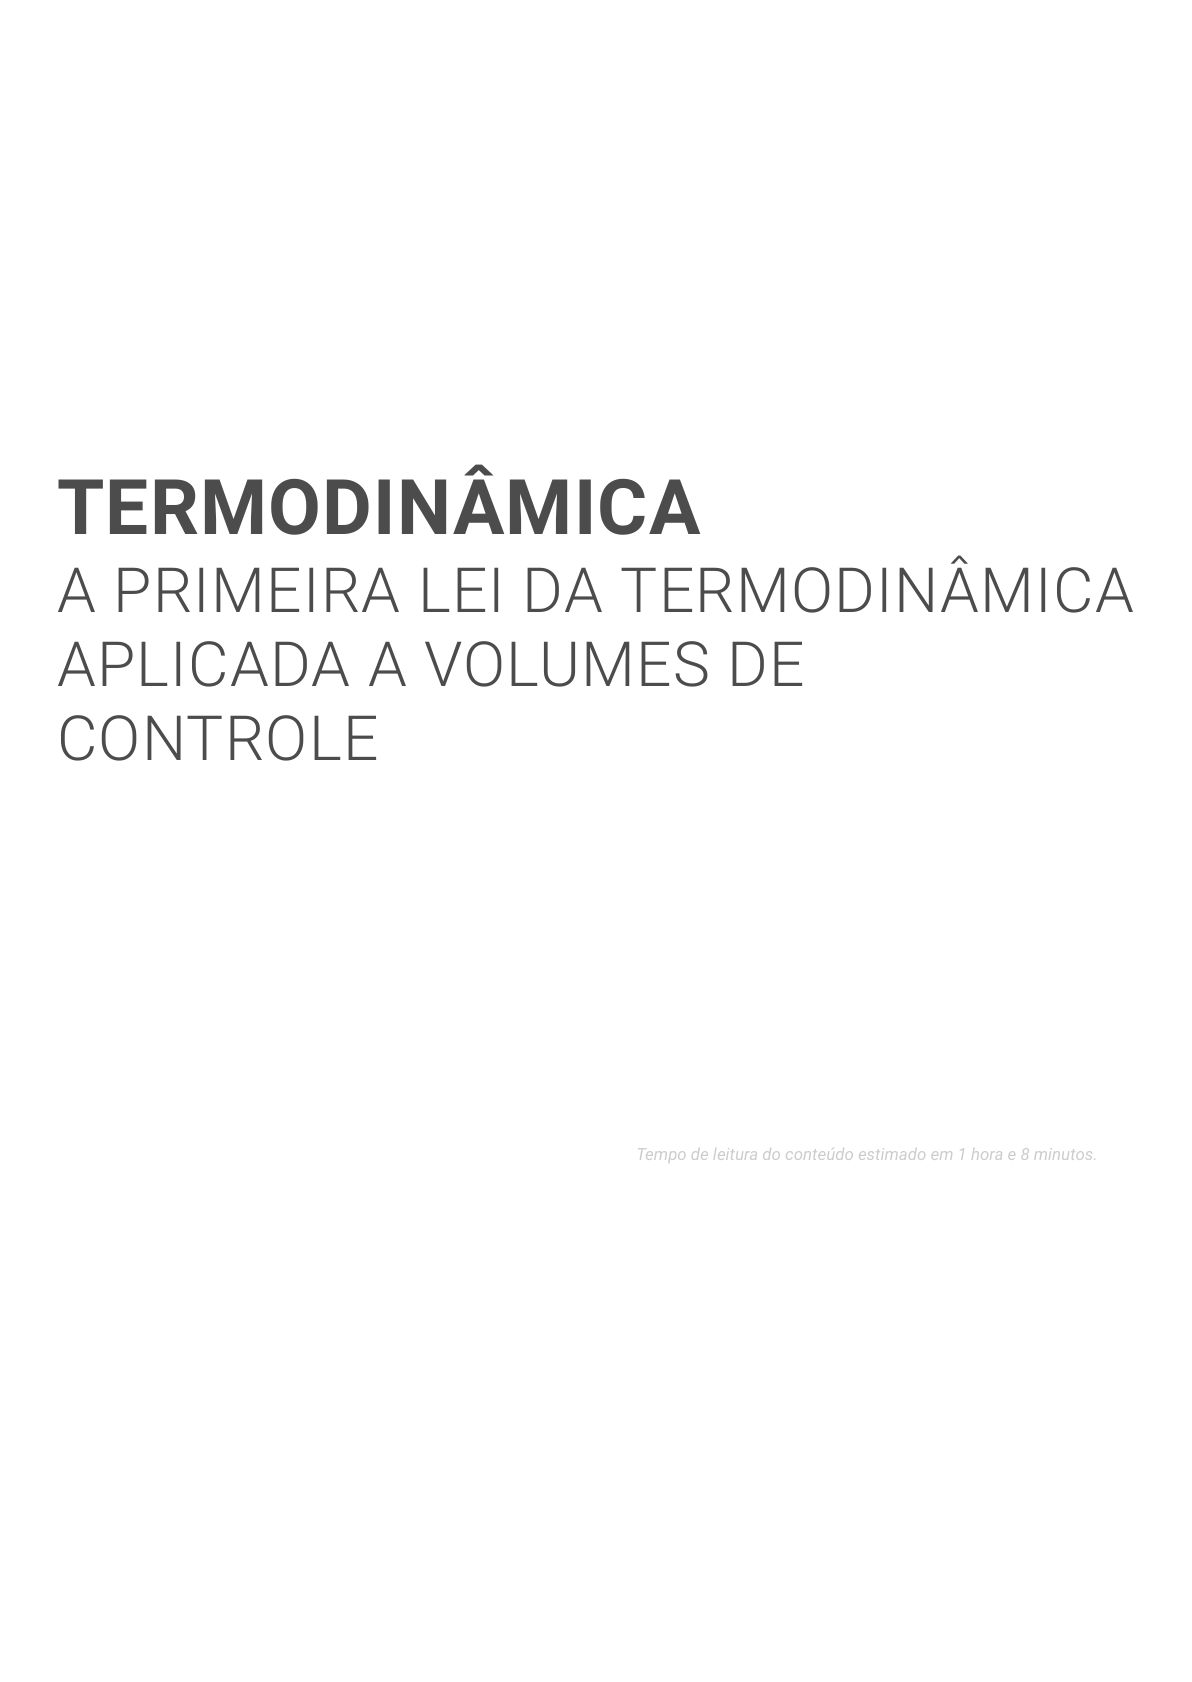 Principios de Termodinamica para Engenharia PDF